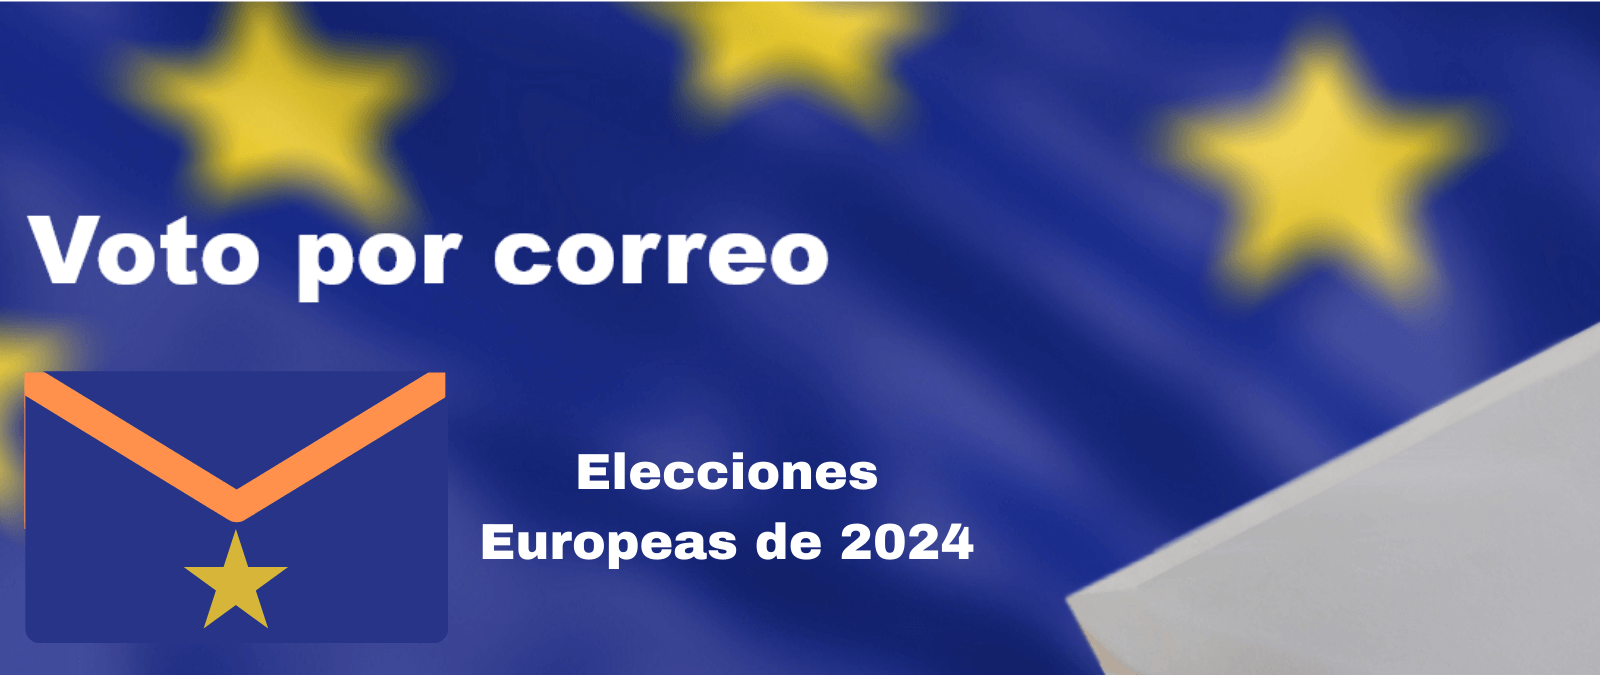 Fechas clave para votar por correo desde España y desde el extranjero en las elecciones europeas de 2024